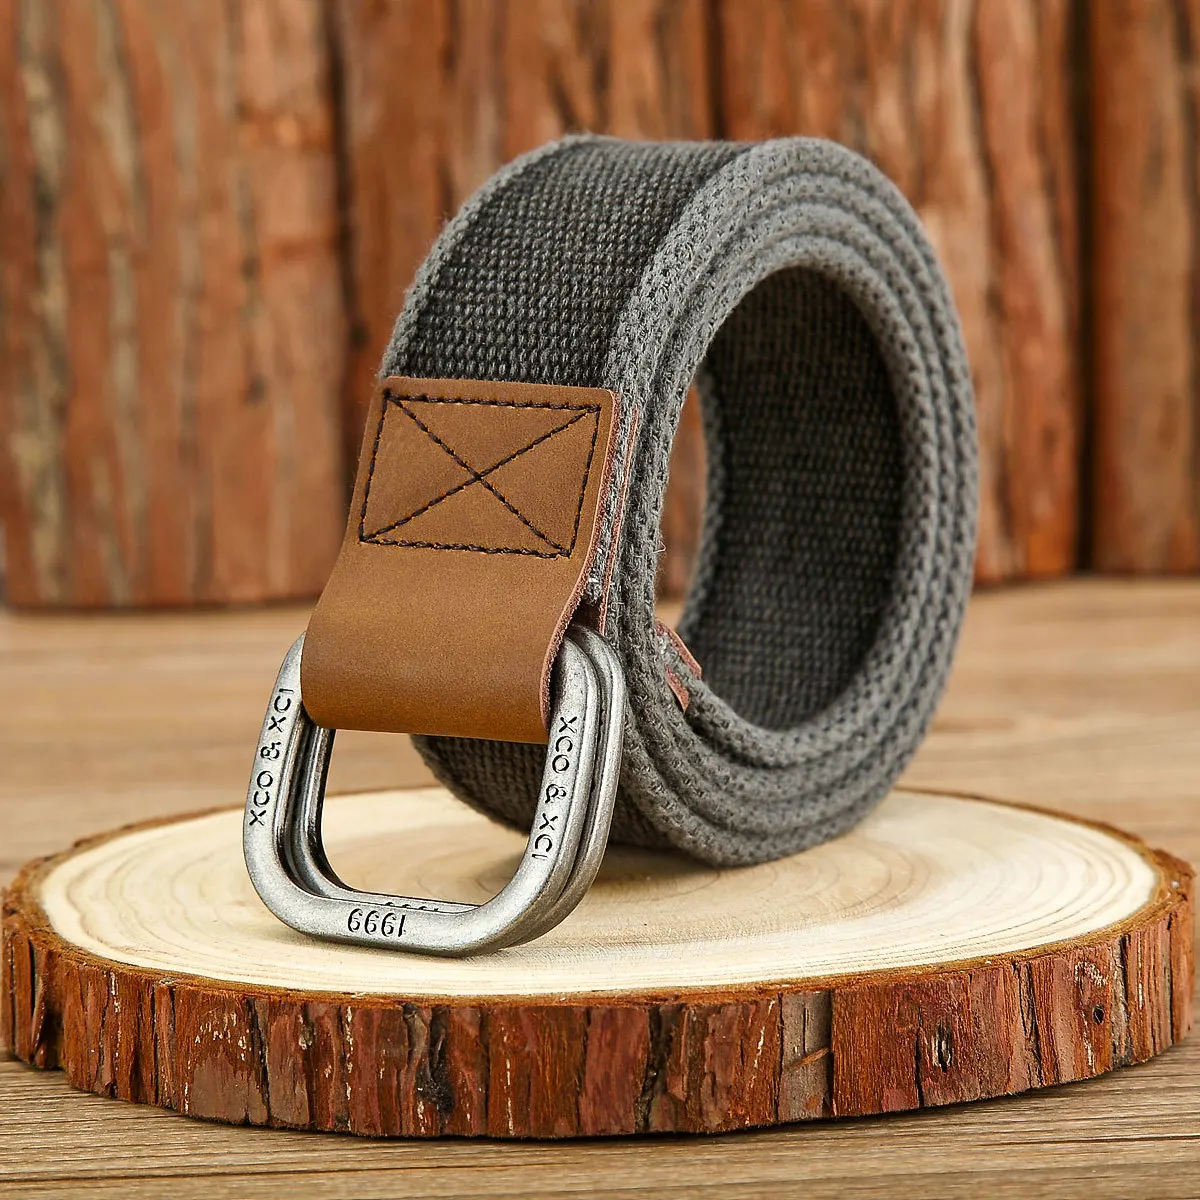 3.8cm New Simple Double Ring Alloy Buckle Woven Canvas Cotton Men's Belt Retro Casual Decorative Belt For Men Wholesale